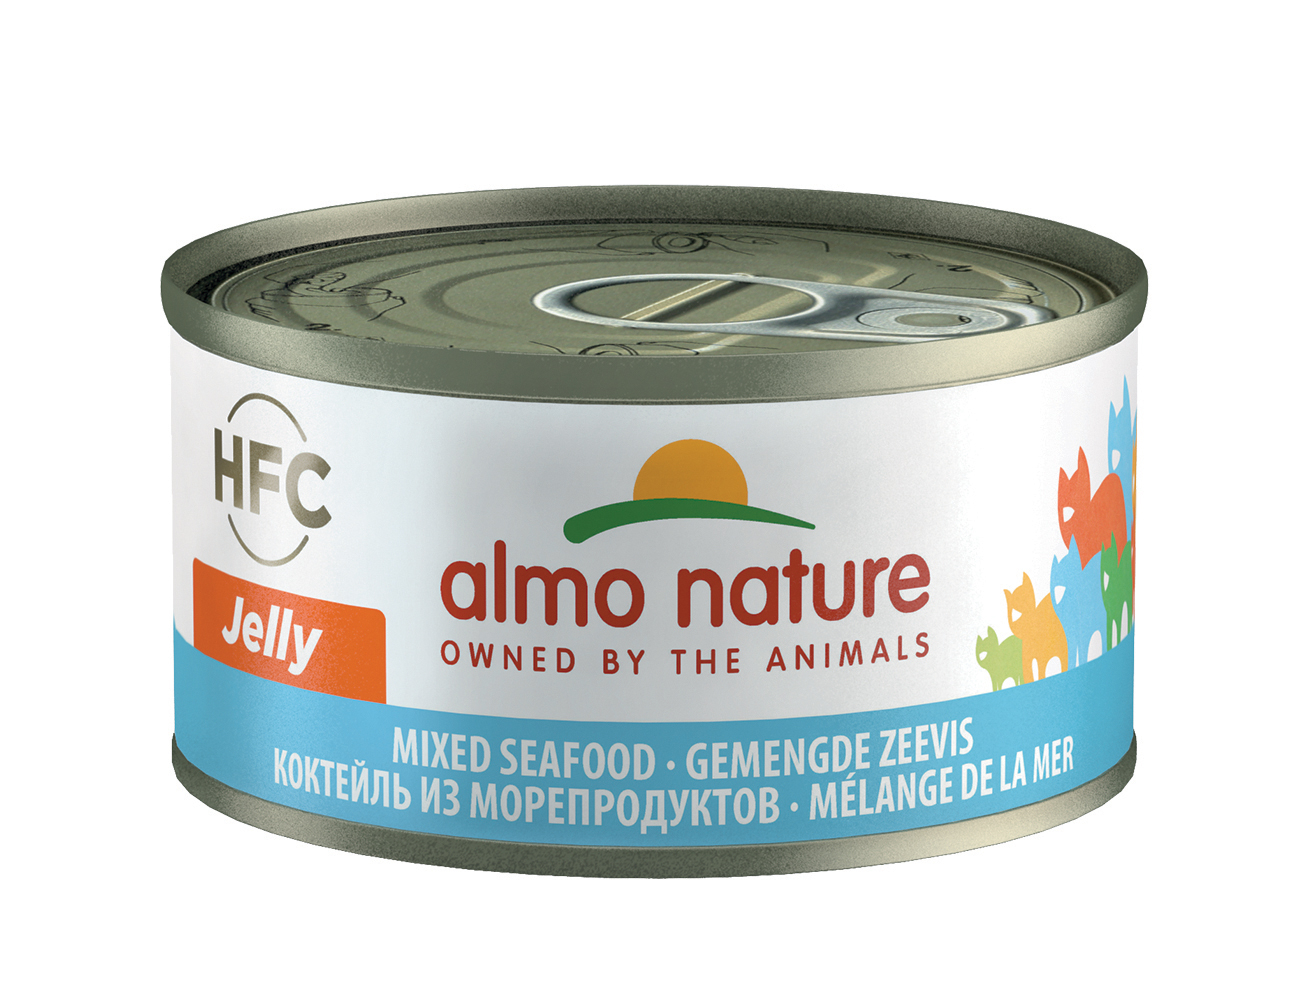 фото Консервы для кошек almo nature hfc jelly mixed seafood, морепродукты, 70г